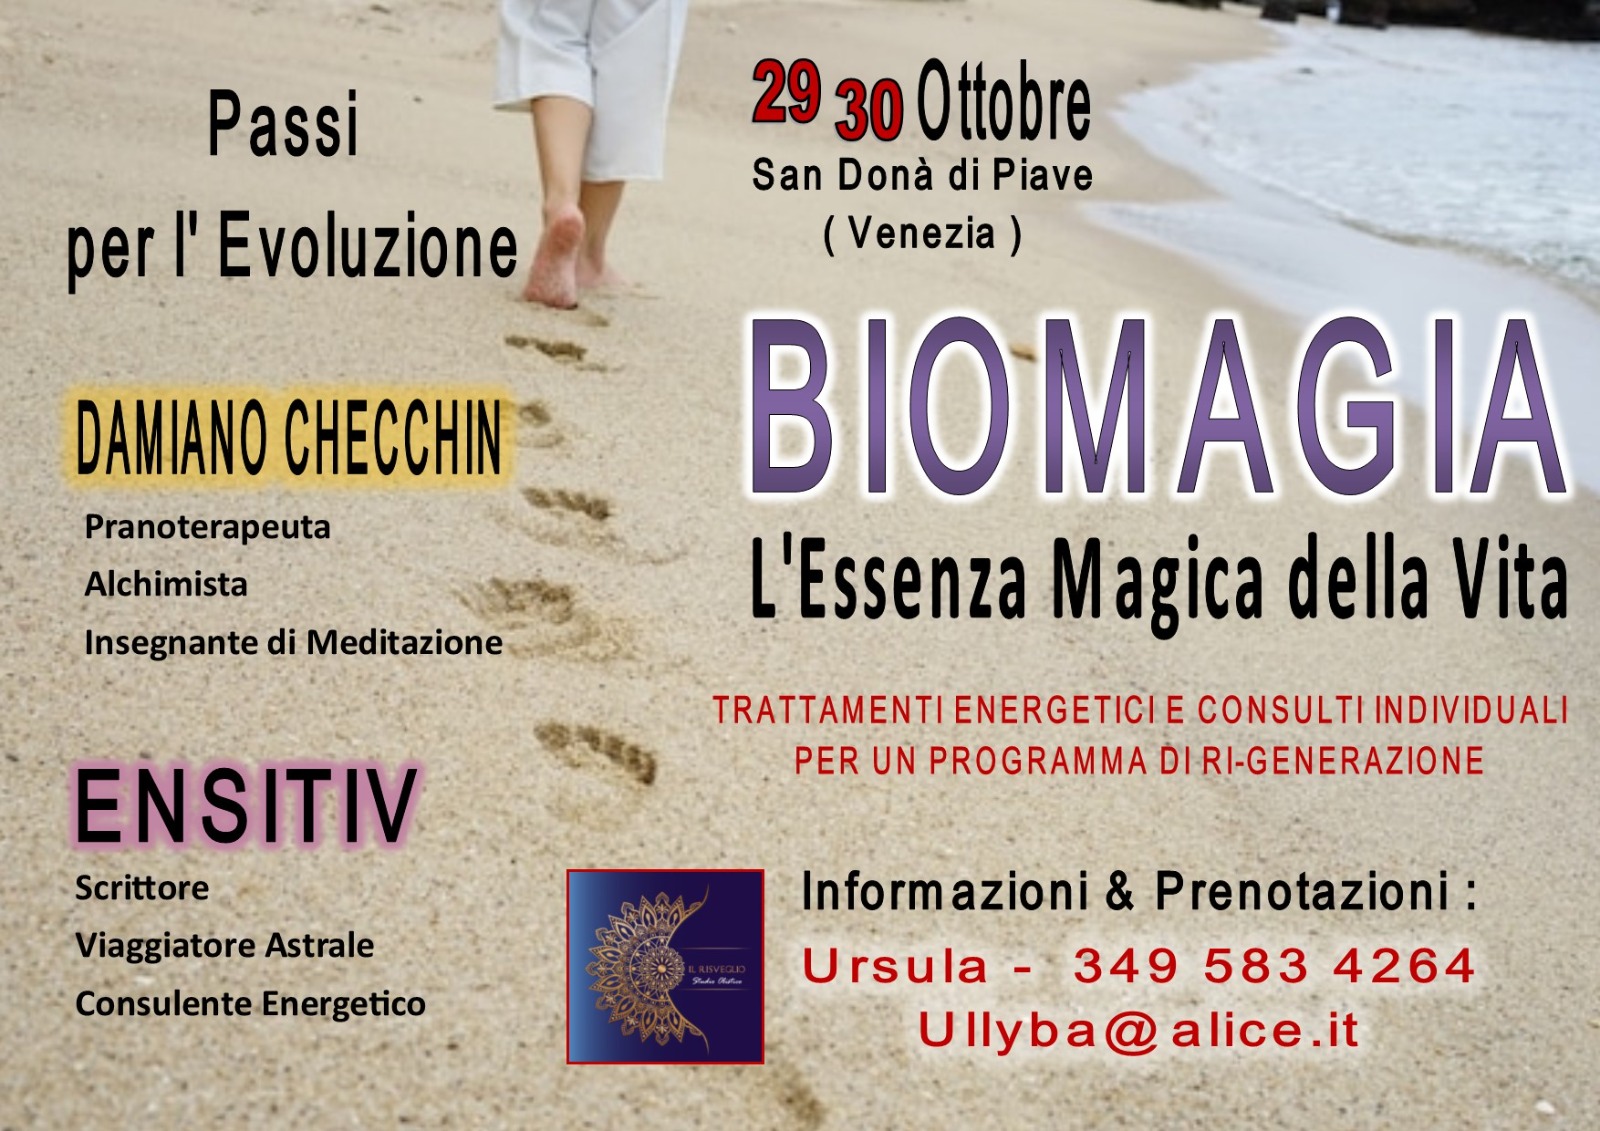 BioMagia - L'Essenza Magica Della Vita